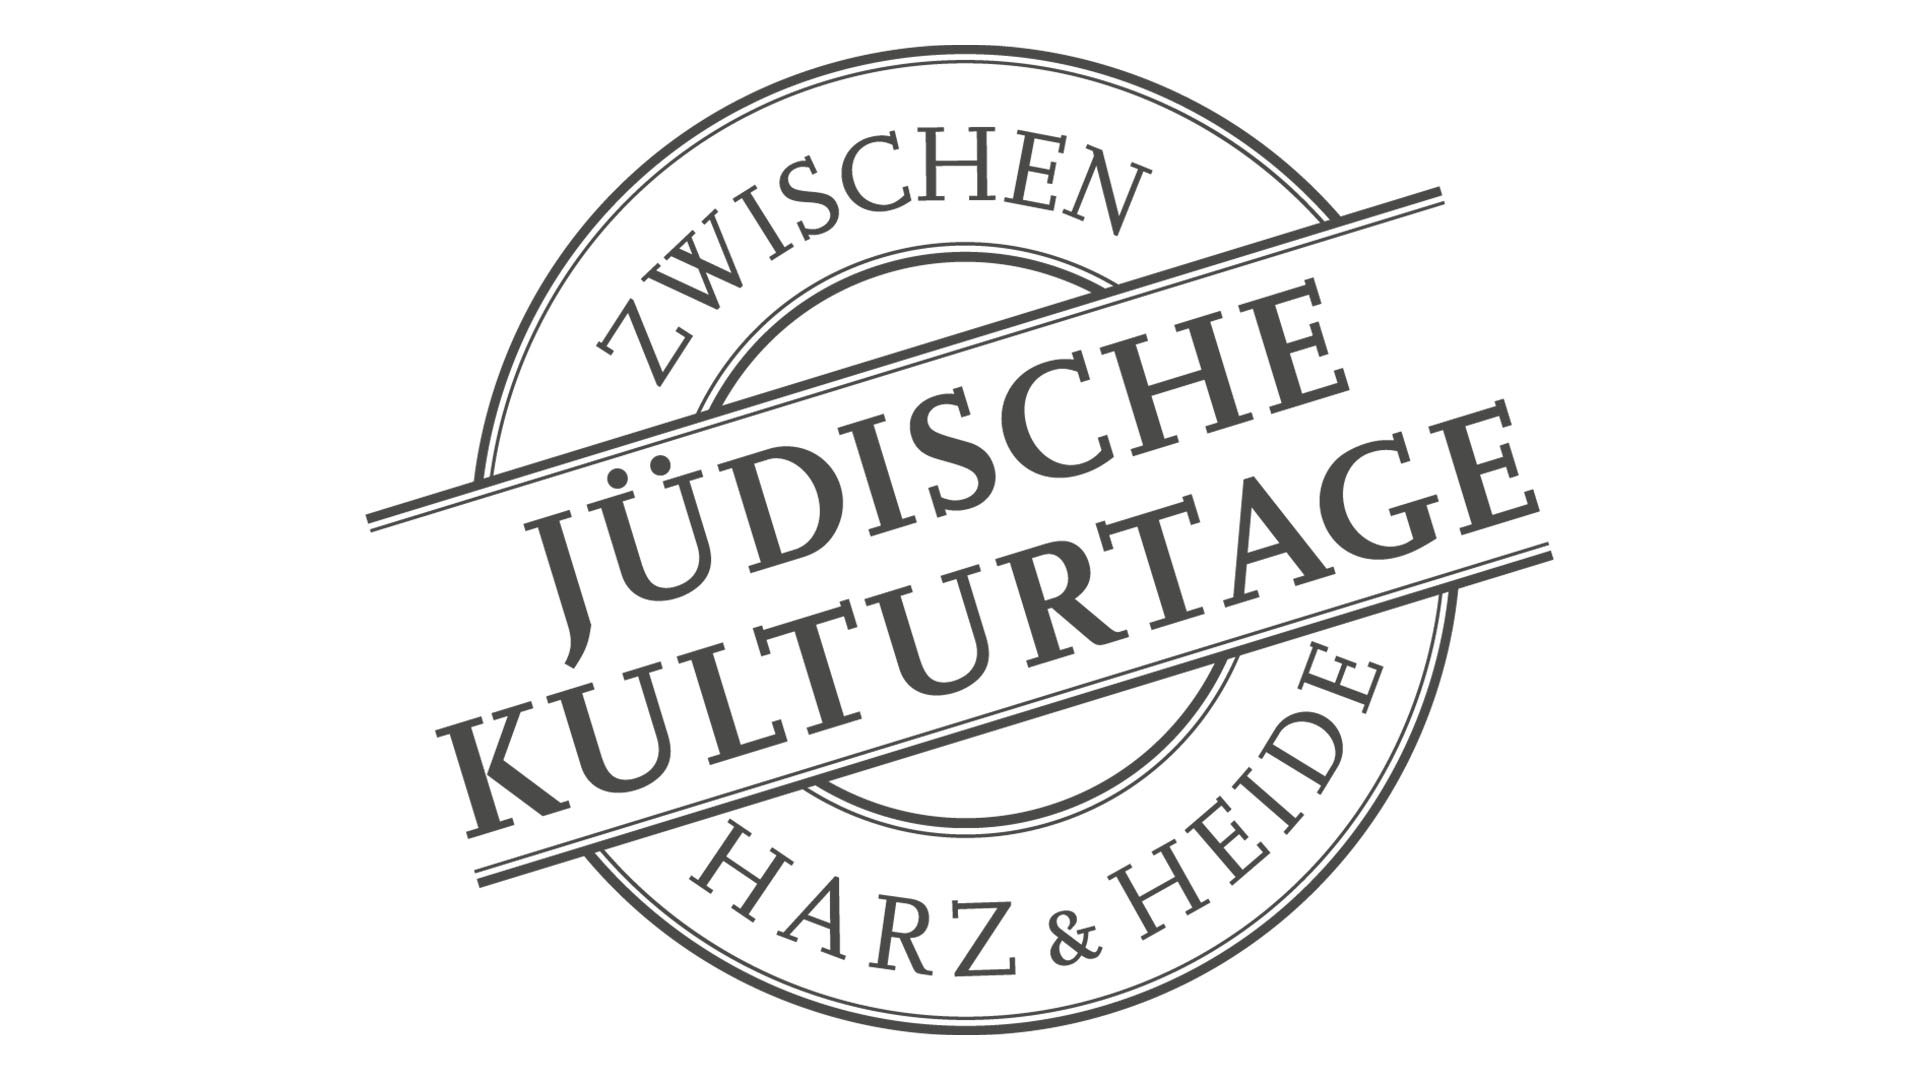 Logo der Jüdischen Kulturtage zwischen Harz & Heide, der Schriftzug ist wie ein Stempelabdruck gestaltet